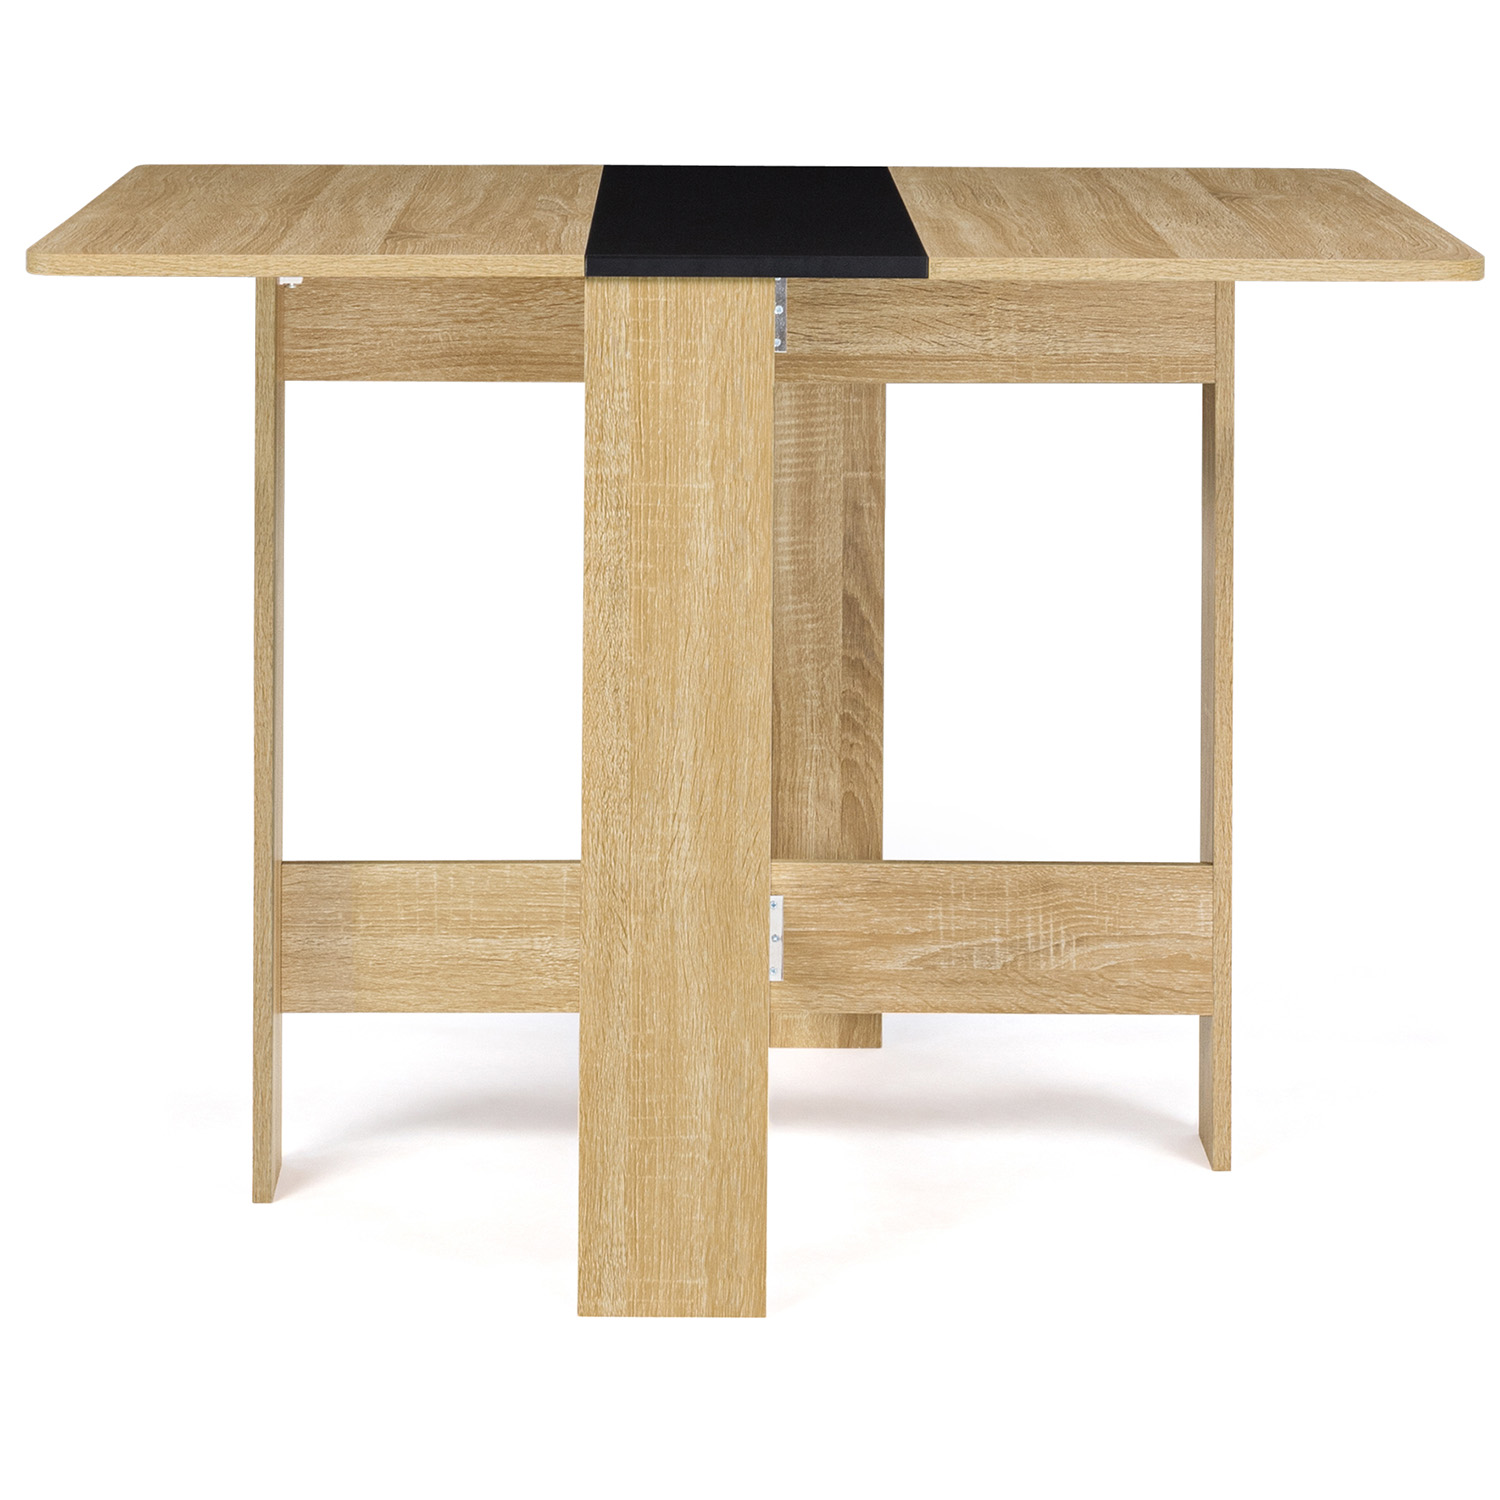 IDMARKET Table console pliable edi 2-4 personnes bois blanc plateau